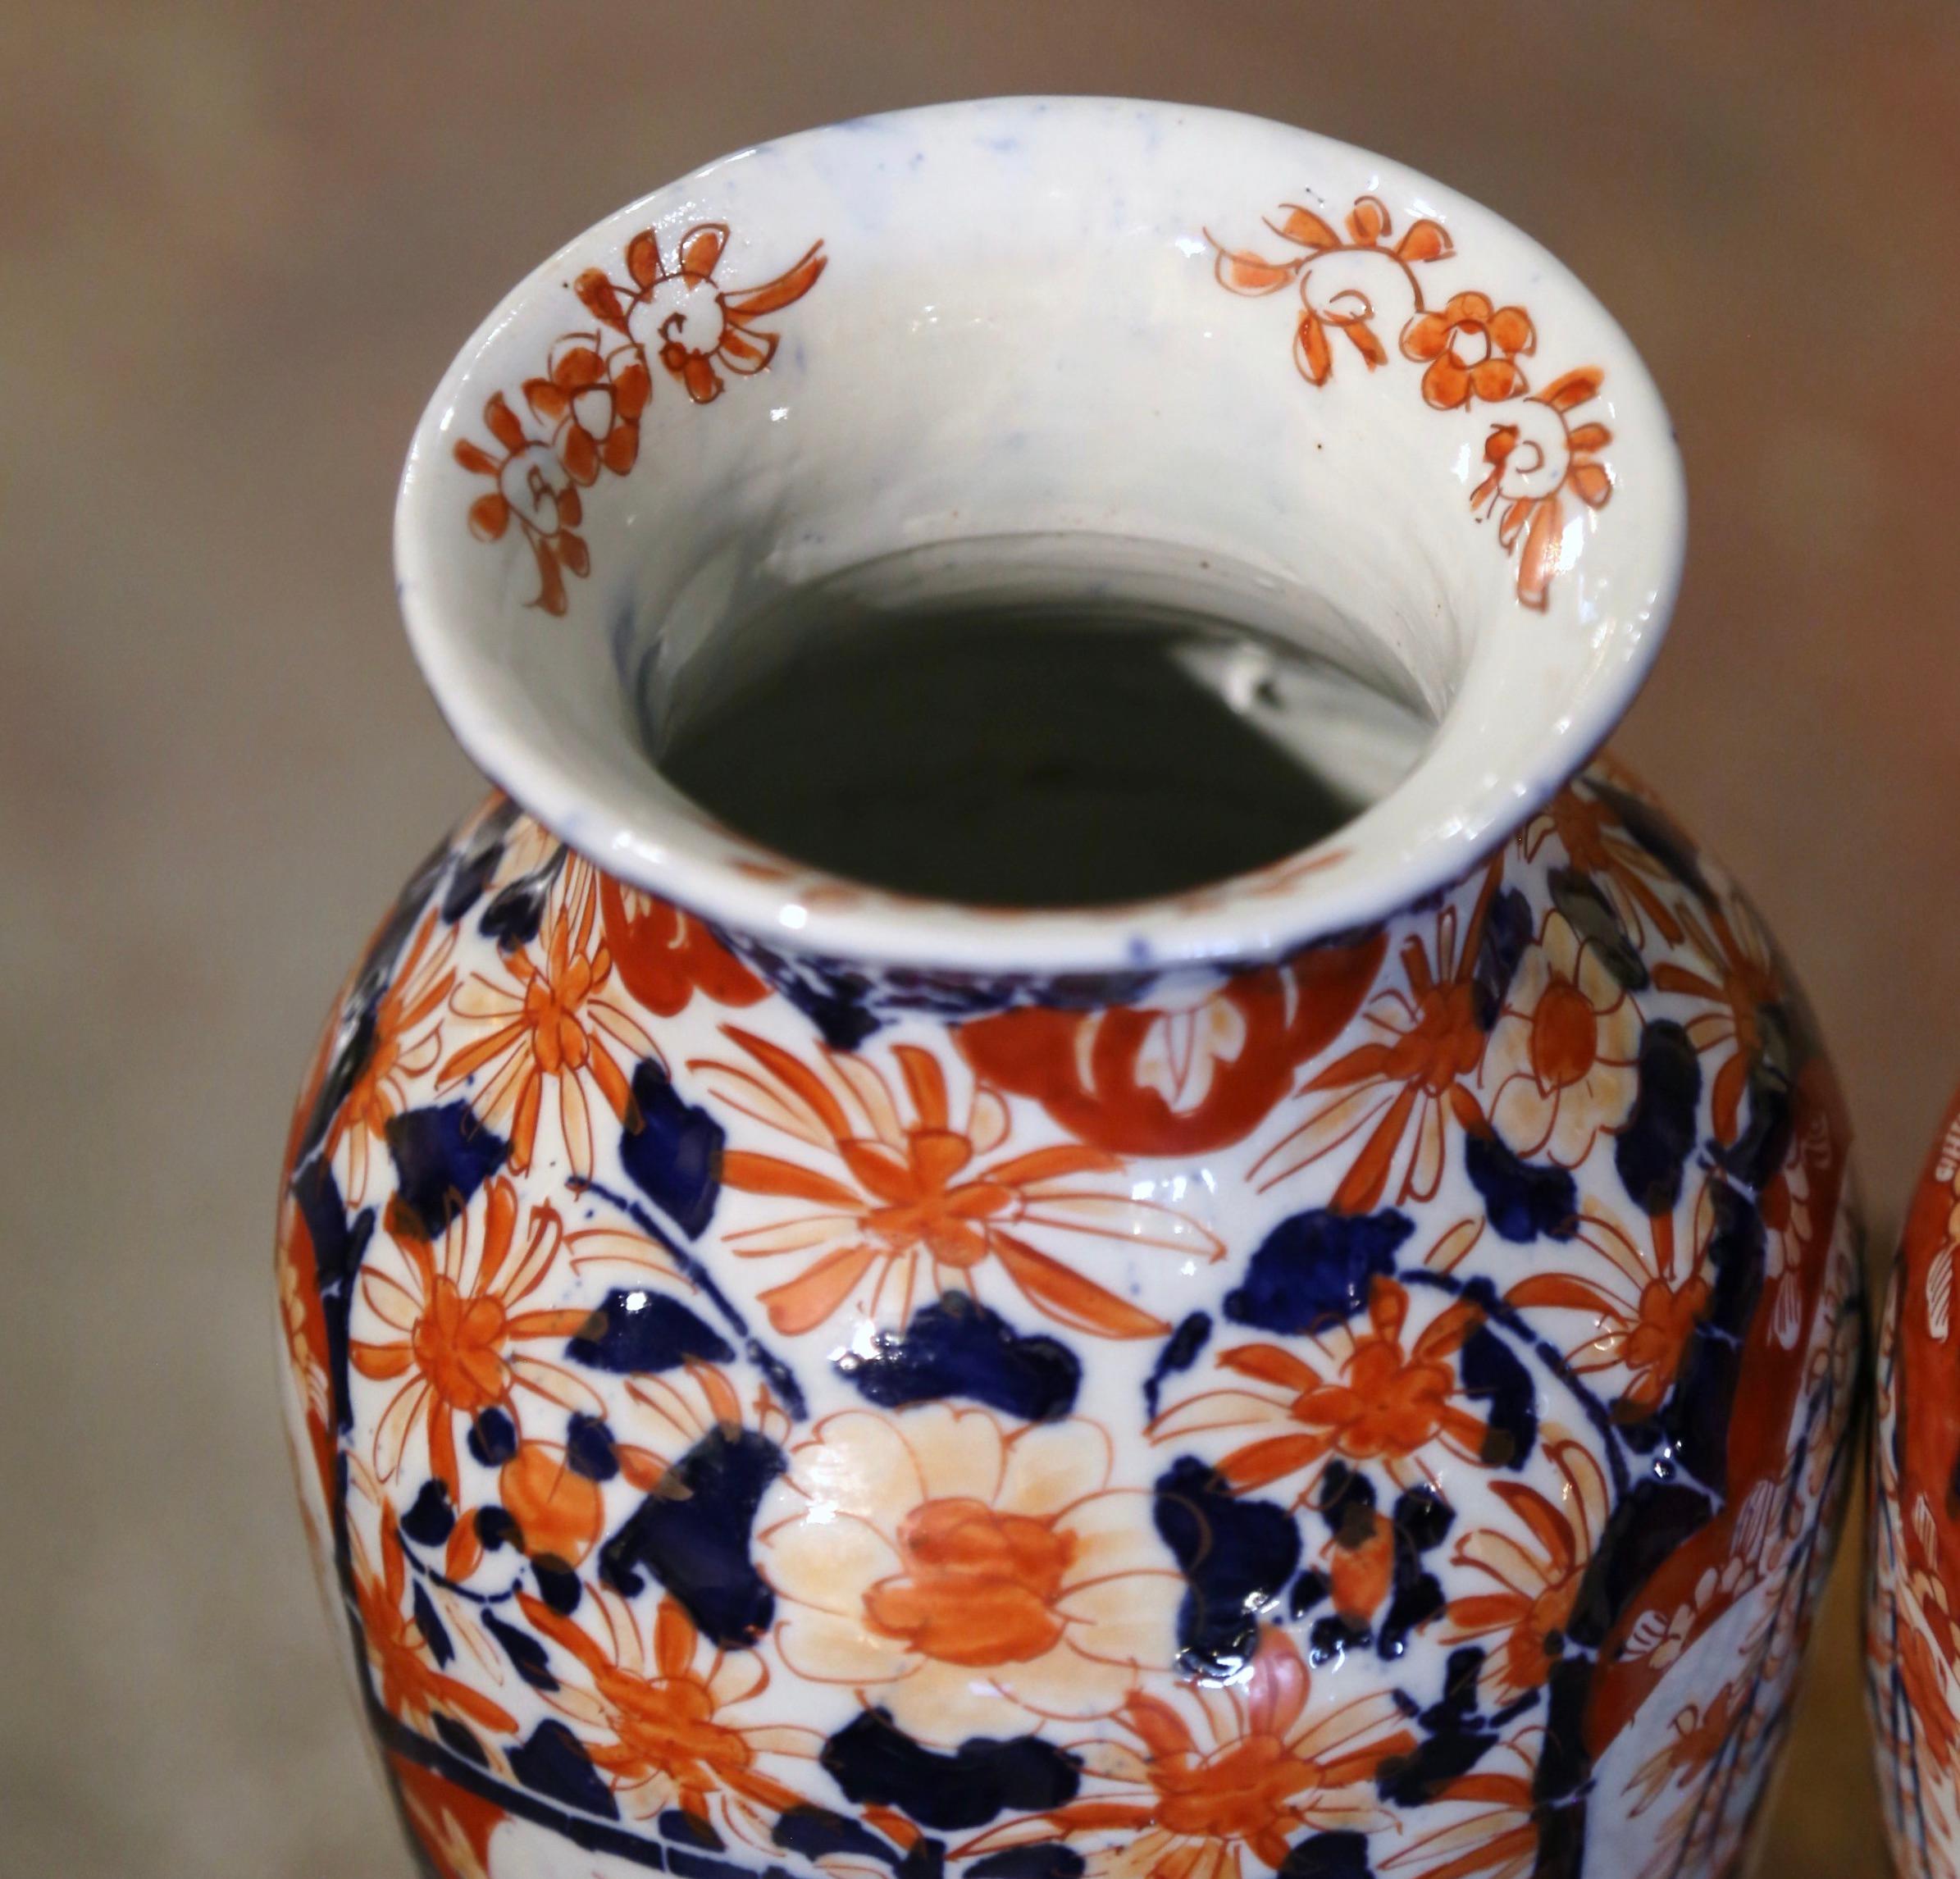 Porcelaine Paire de vases Imari en porcelaine japonaise du 19ème siècle avec décor floral et végétal